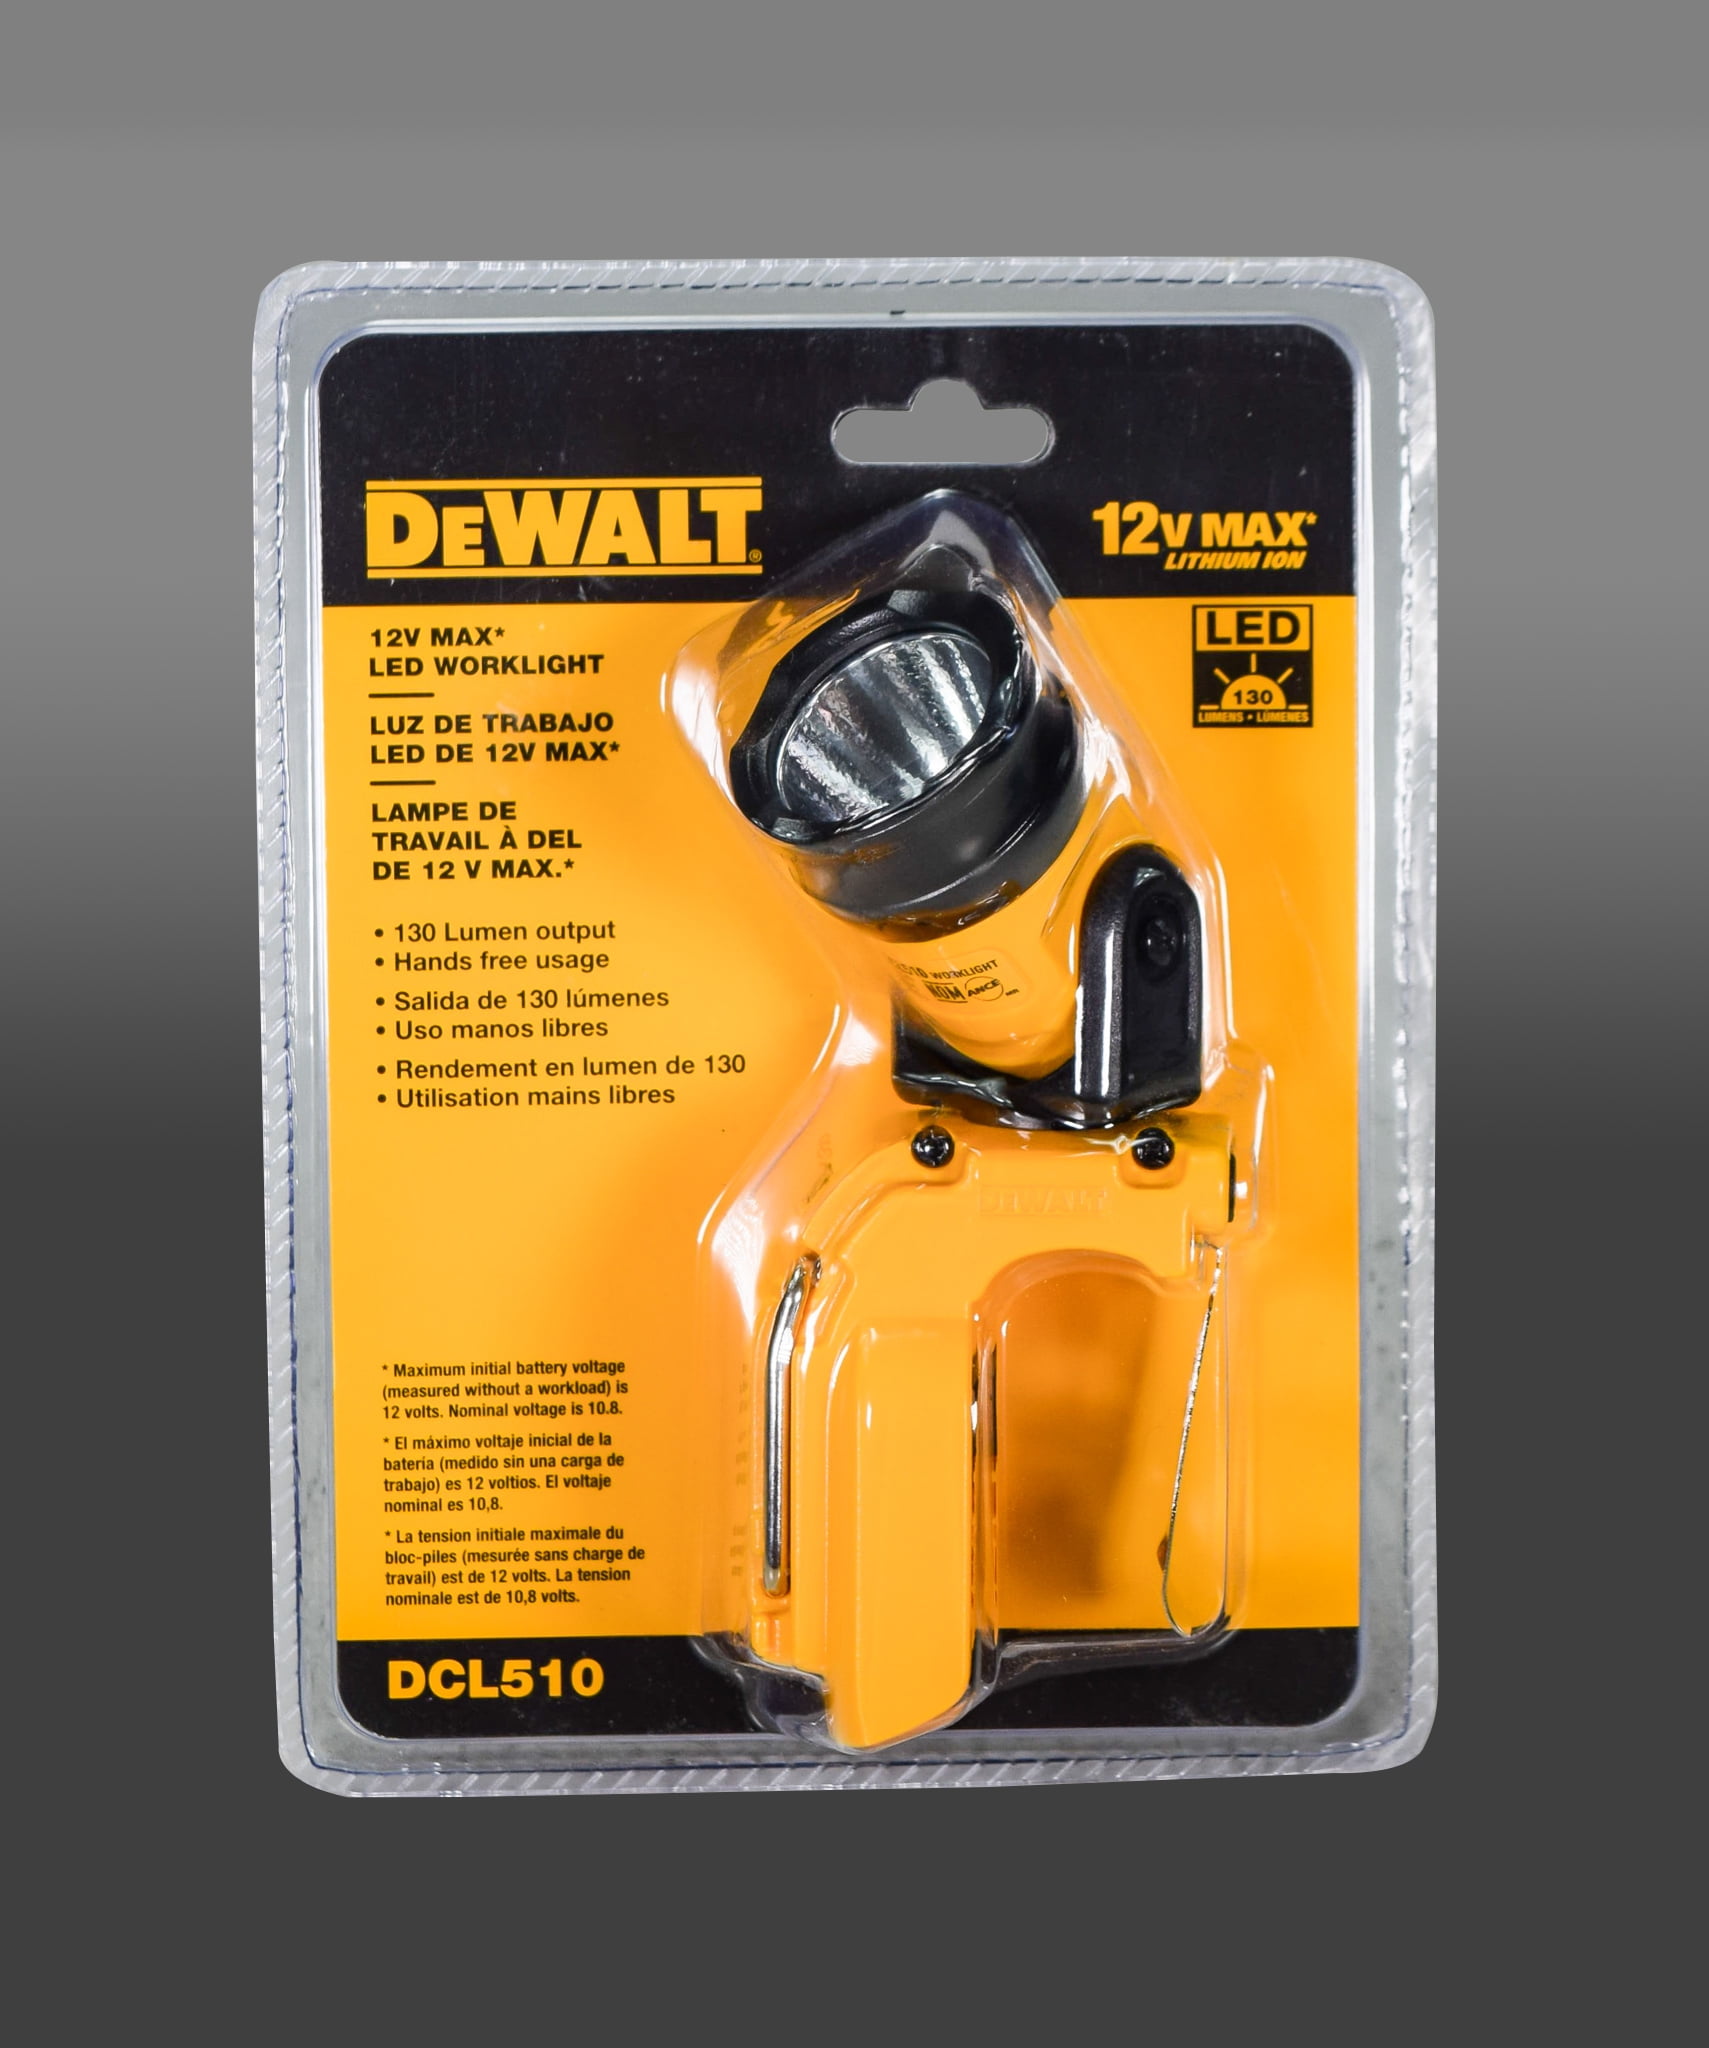 DEWALT DCL510 12V Cordless LED Work Light for sale online 